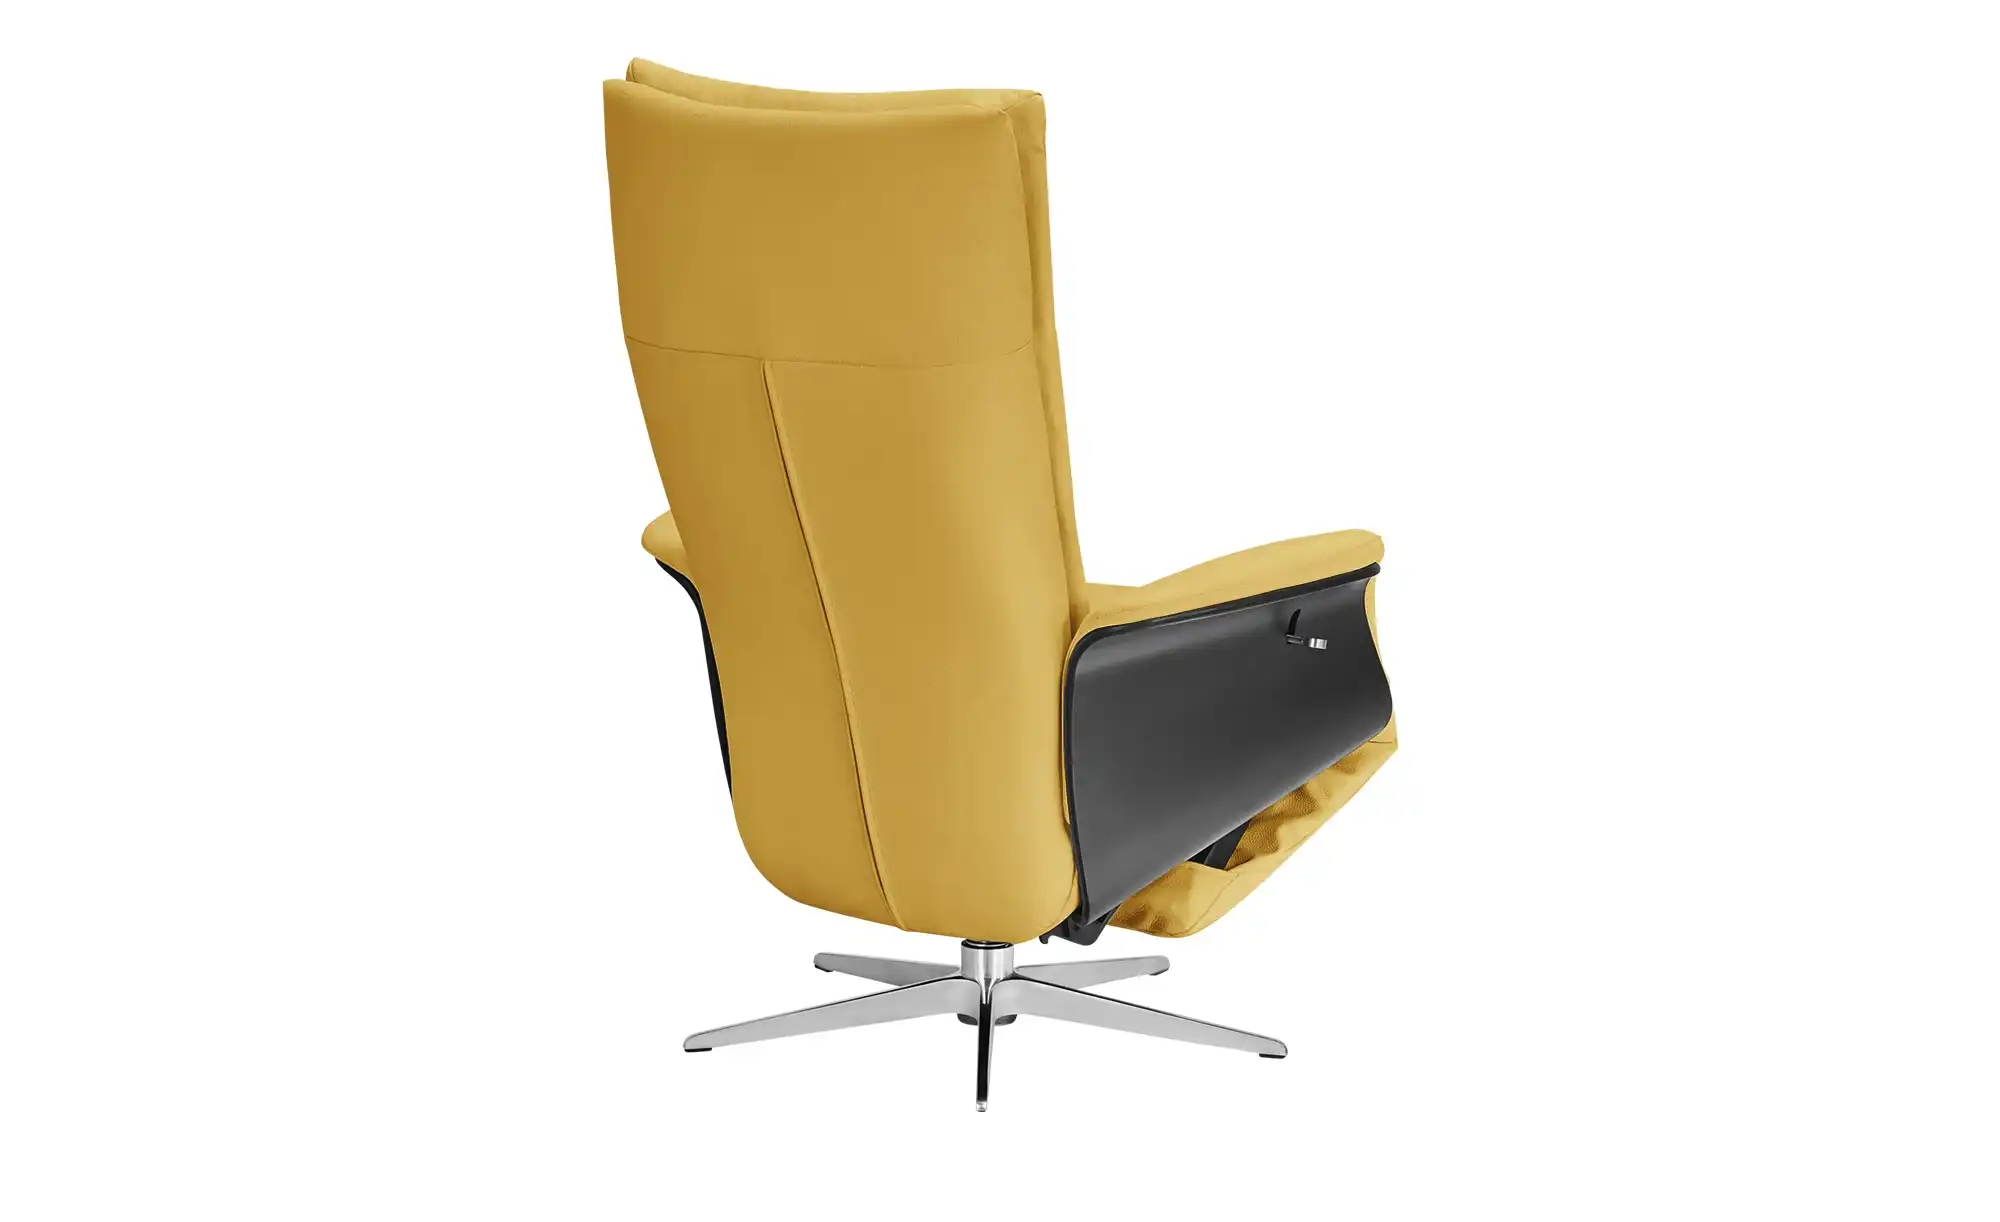 Relaxsessel Gelb : Sessel In Gelb Online Kaufen Otto ...